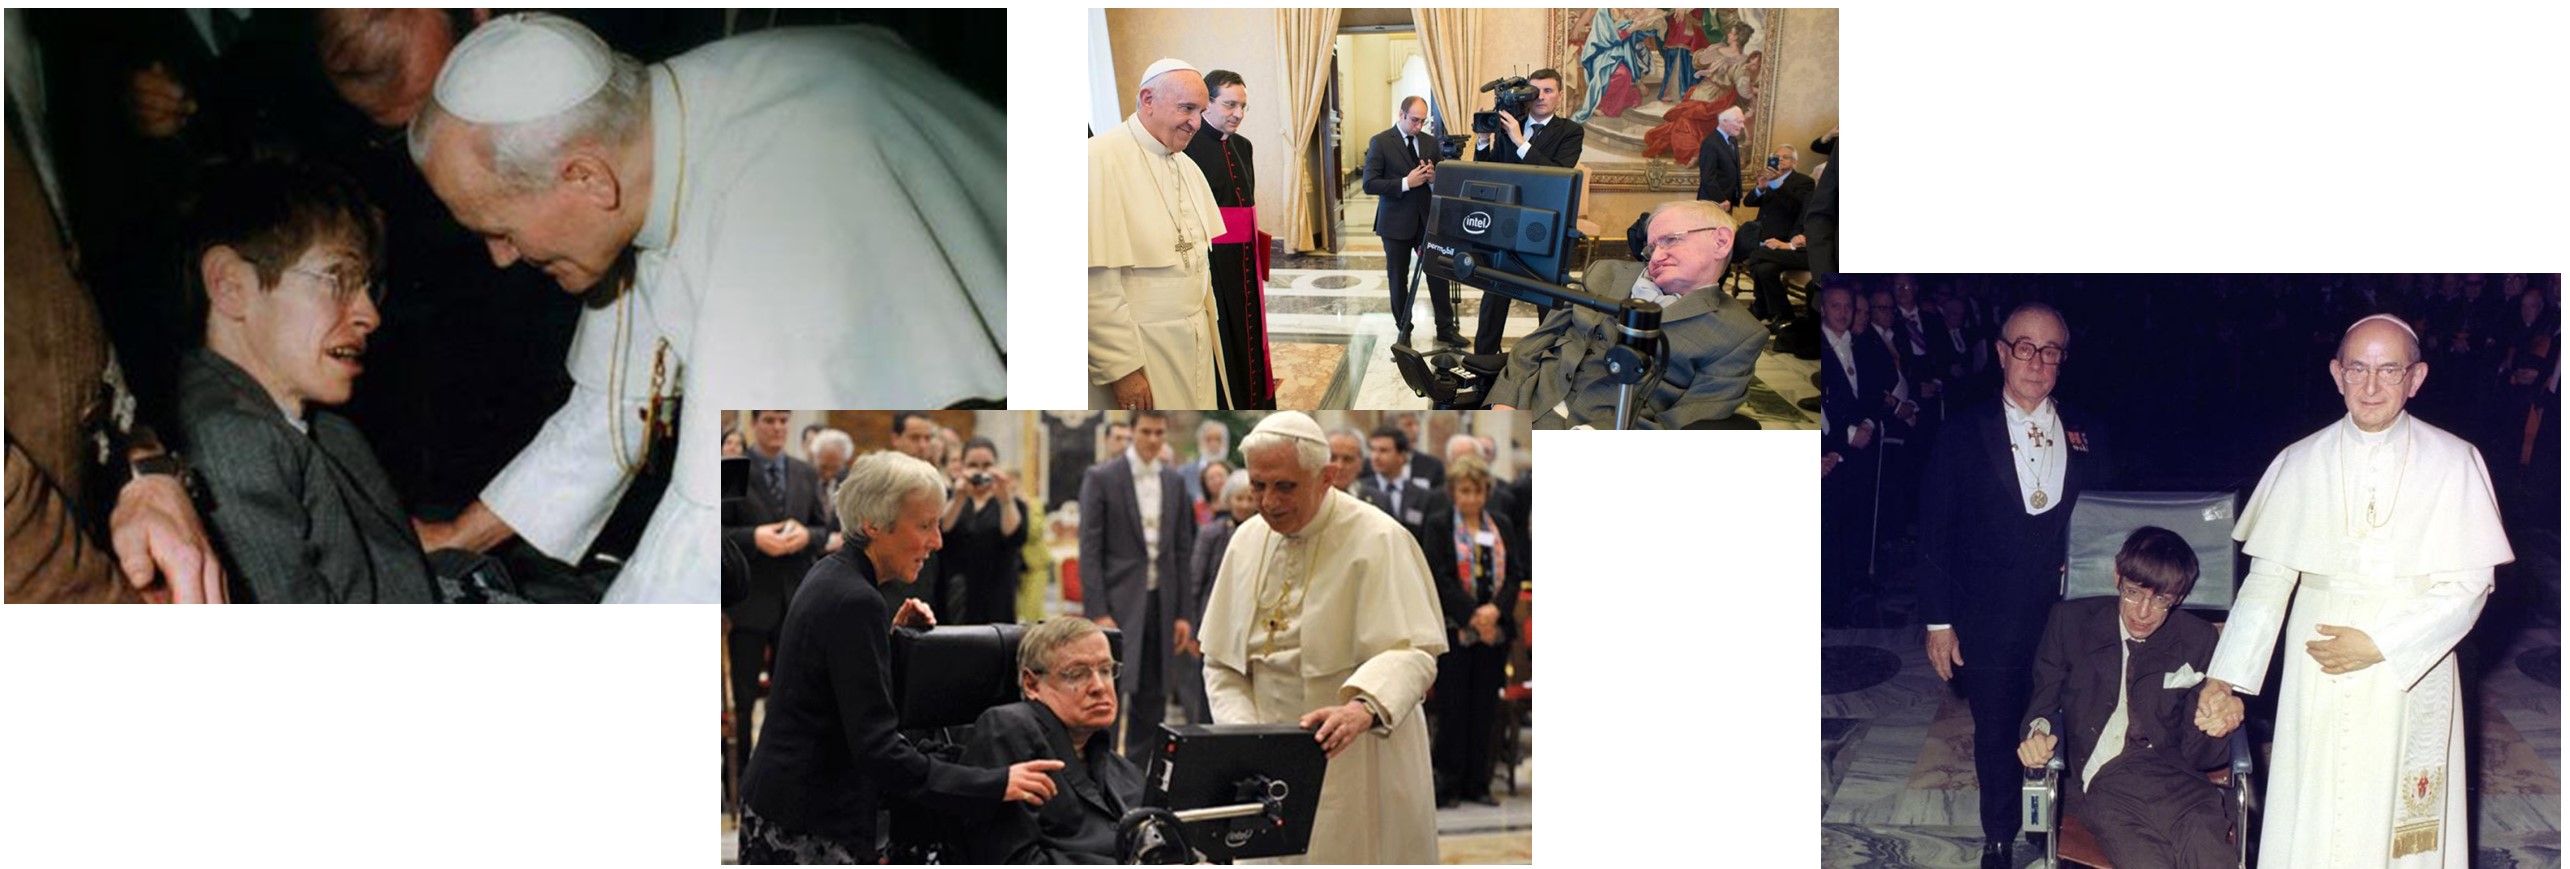 Hawking era miembro de la Pontificia Academia de las Ciencias y de la Specola Vaticana